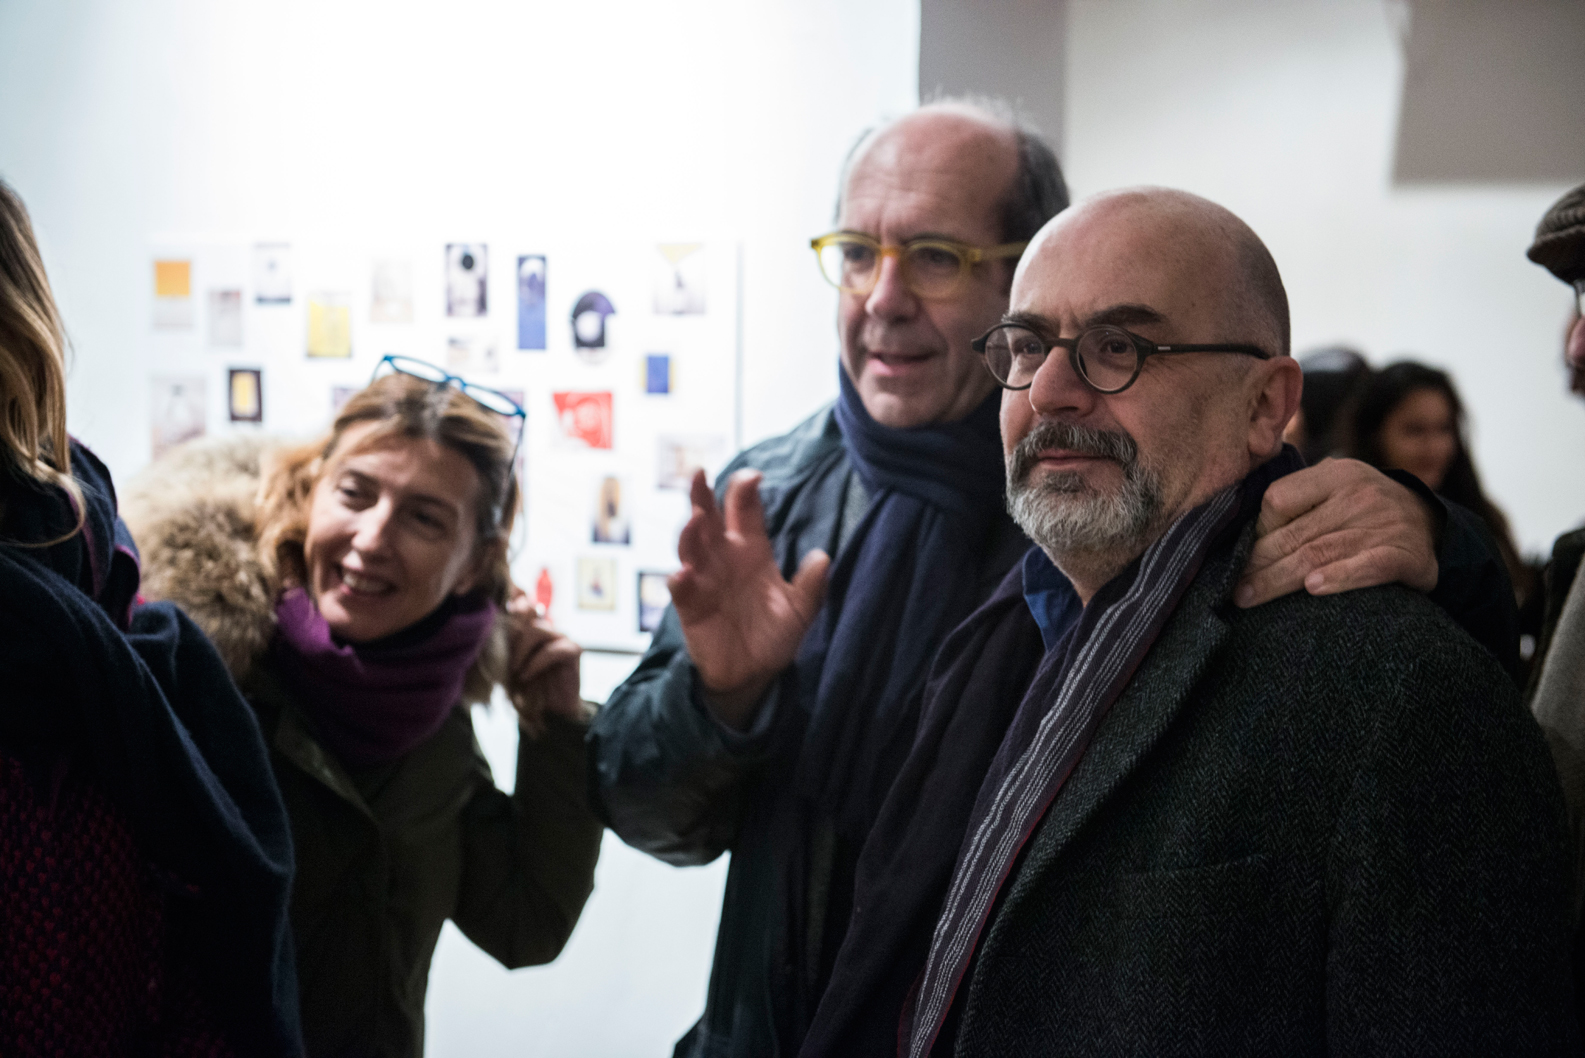 Gianni Dessì: Dentro e Fuori, opening 5 febbraio 2015, Fondazione Pastificio Cerere. Credits: Andrea Musico